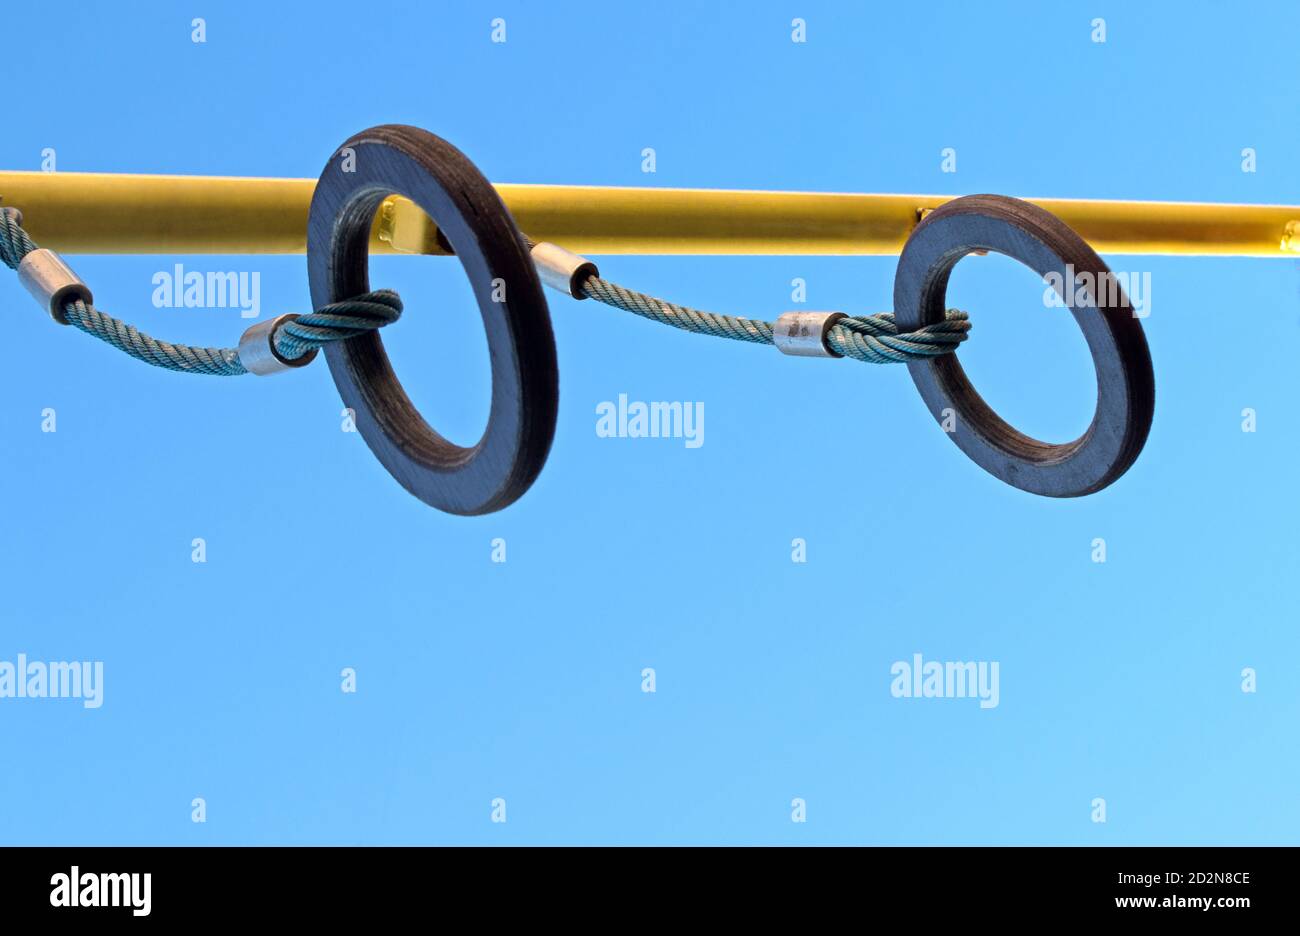 Gli anelli di gymnastic di legno marrone sono sospesi da corde blu ritorte con i cerchi di metallo compressi dalla traversa gialla sul parco giochi contro il cielo blu. Foto Stock